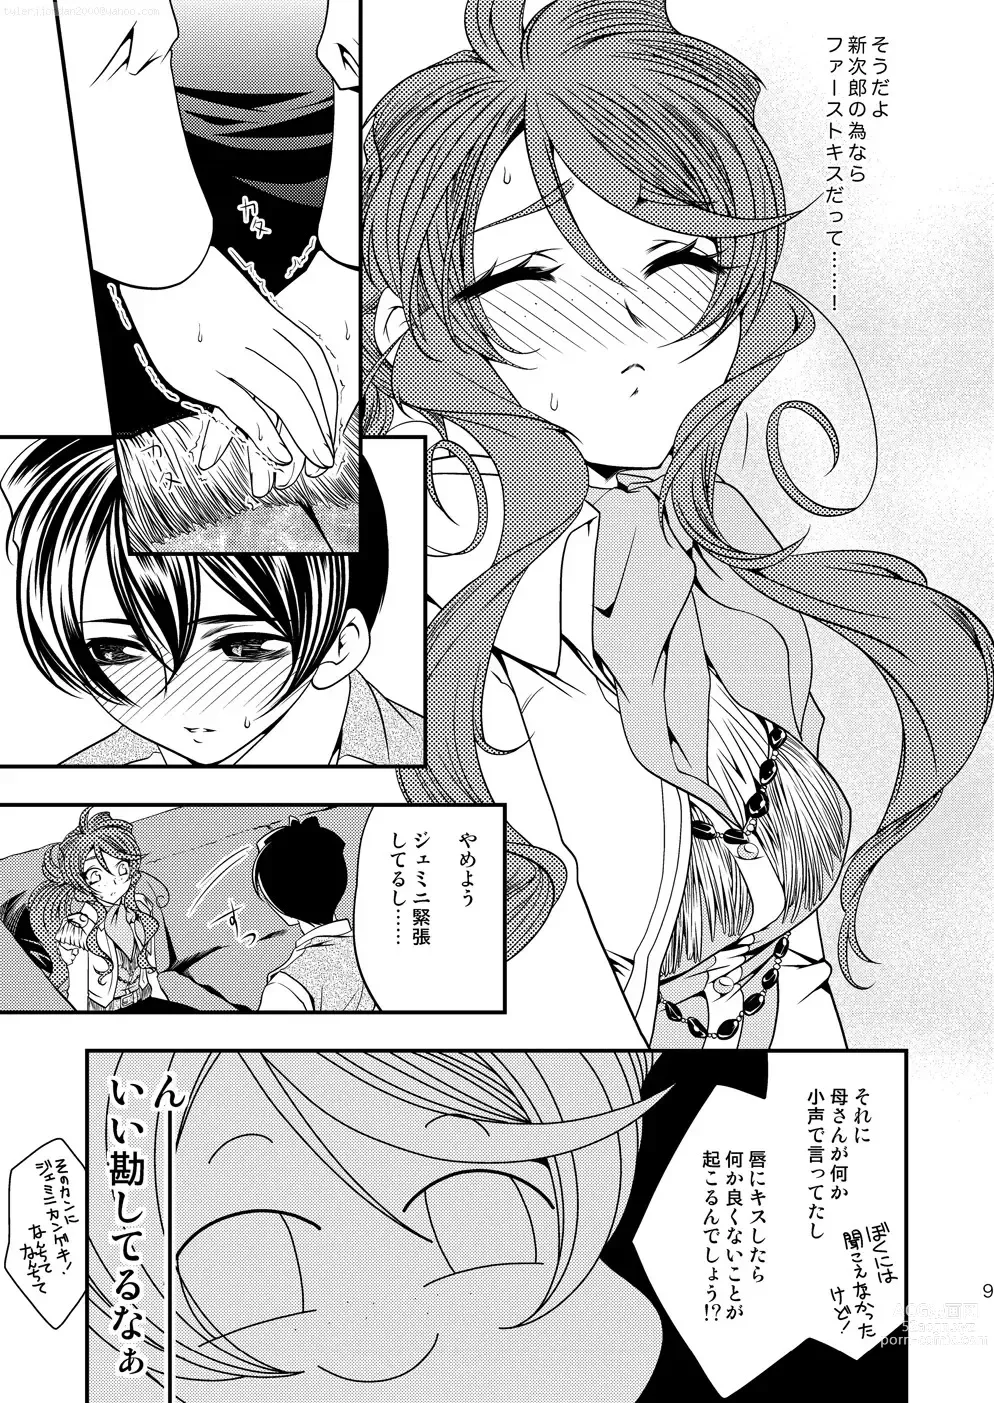 Page 8 of doujinshi Maru Maru Mori Mori na Okusuri no Sei de Gemini-san ga Kiss o Nedaru